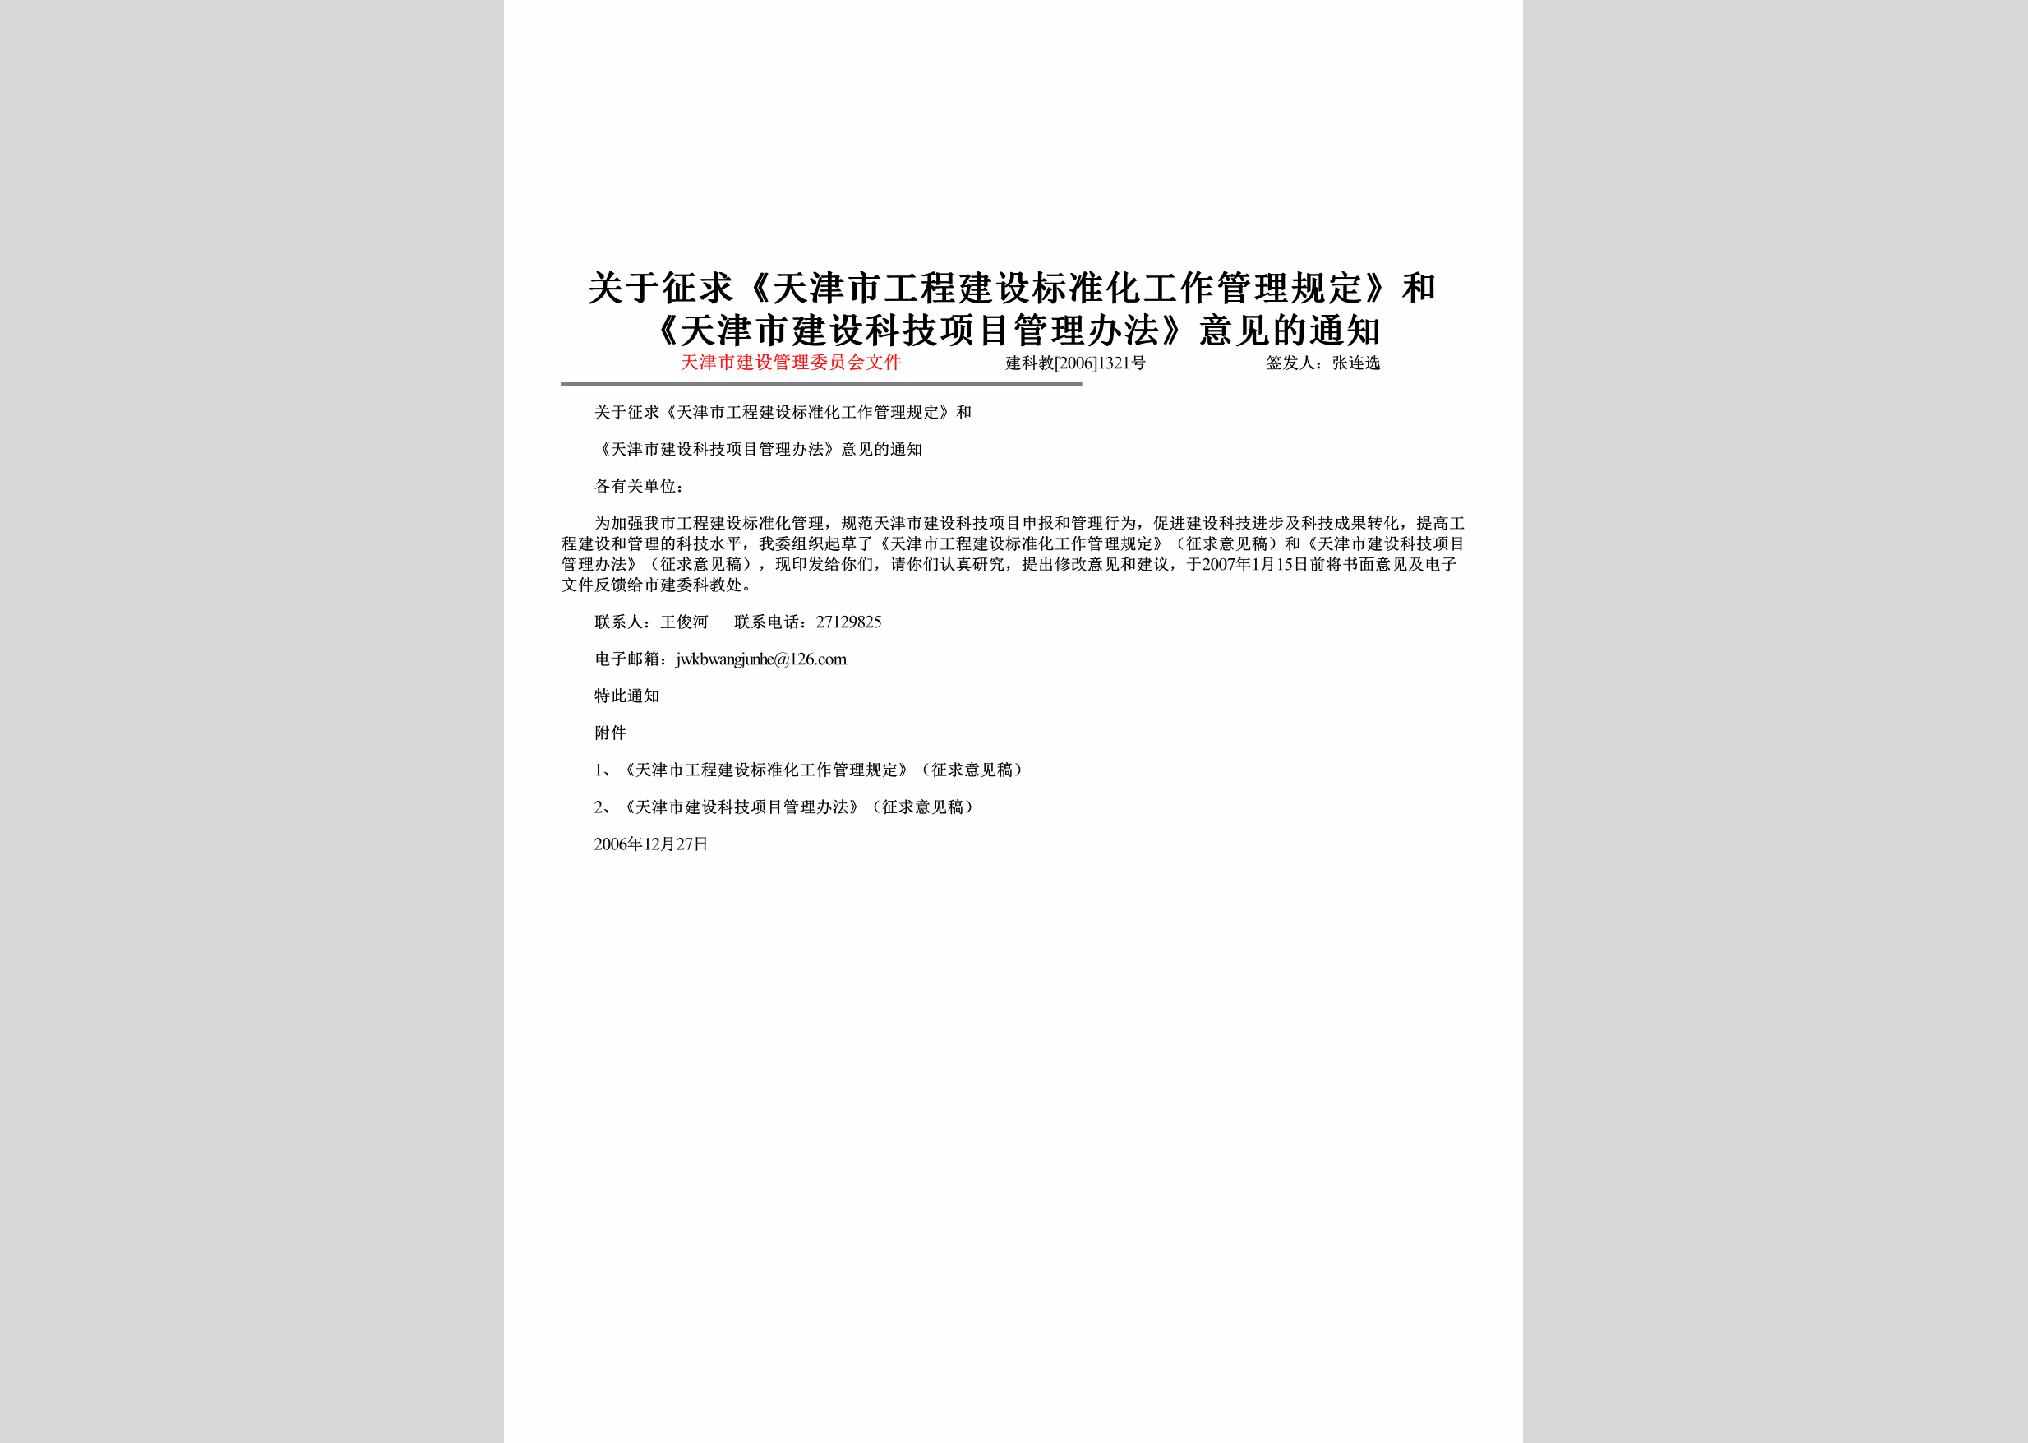 建科教[2006]1321号：关于征求《天津市工程建设标准化工作管理规定》和《天津市建设科技项目管理办法》意